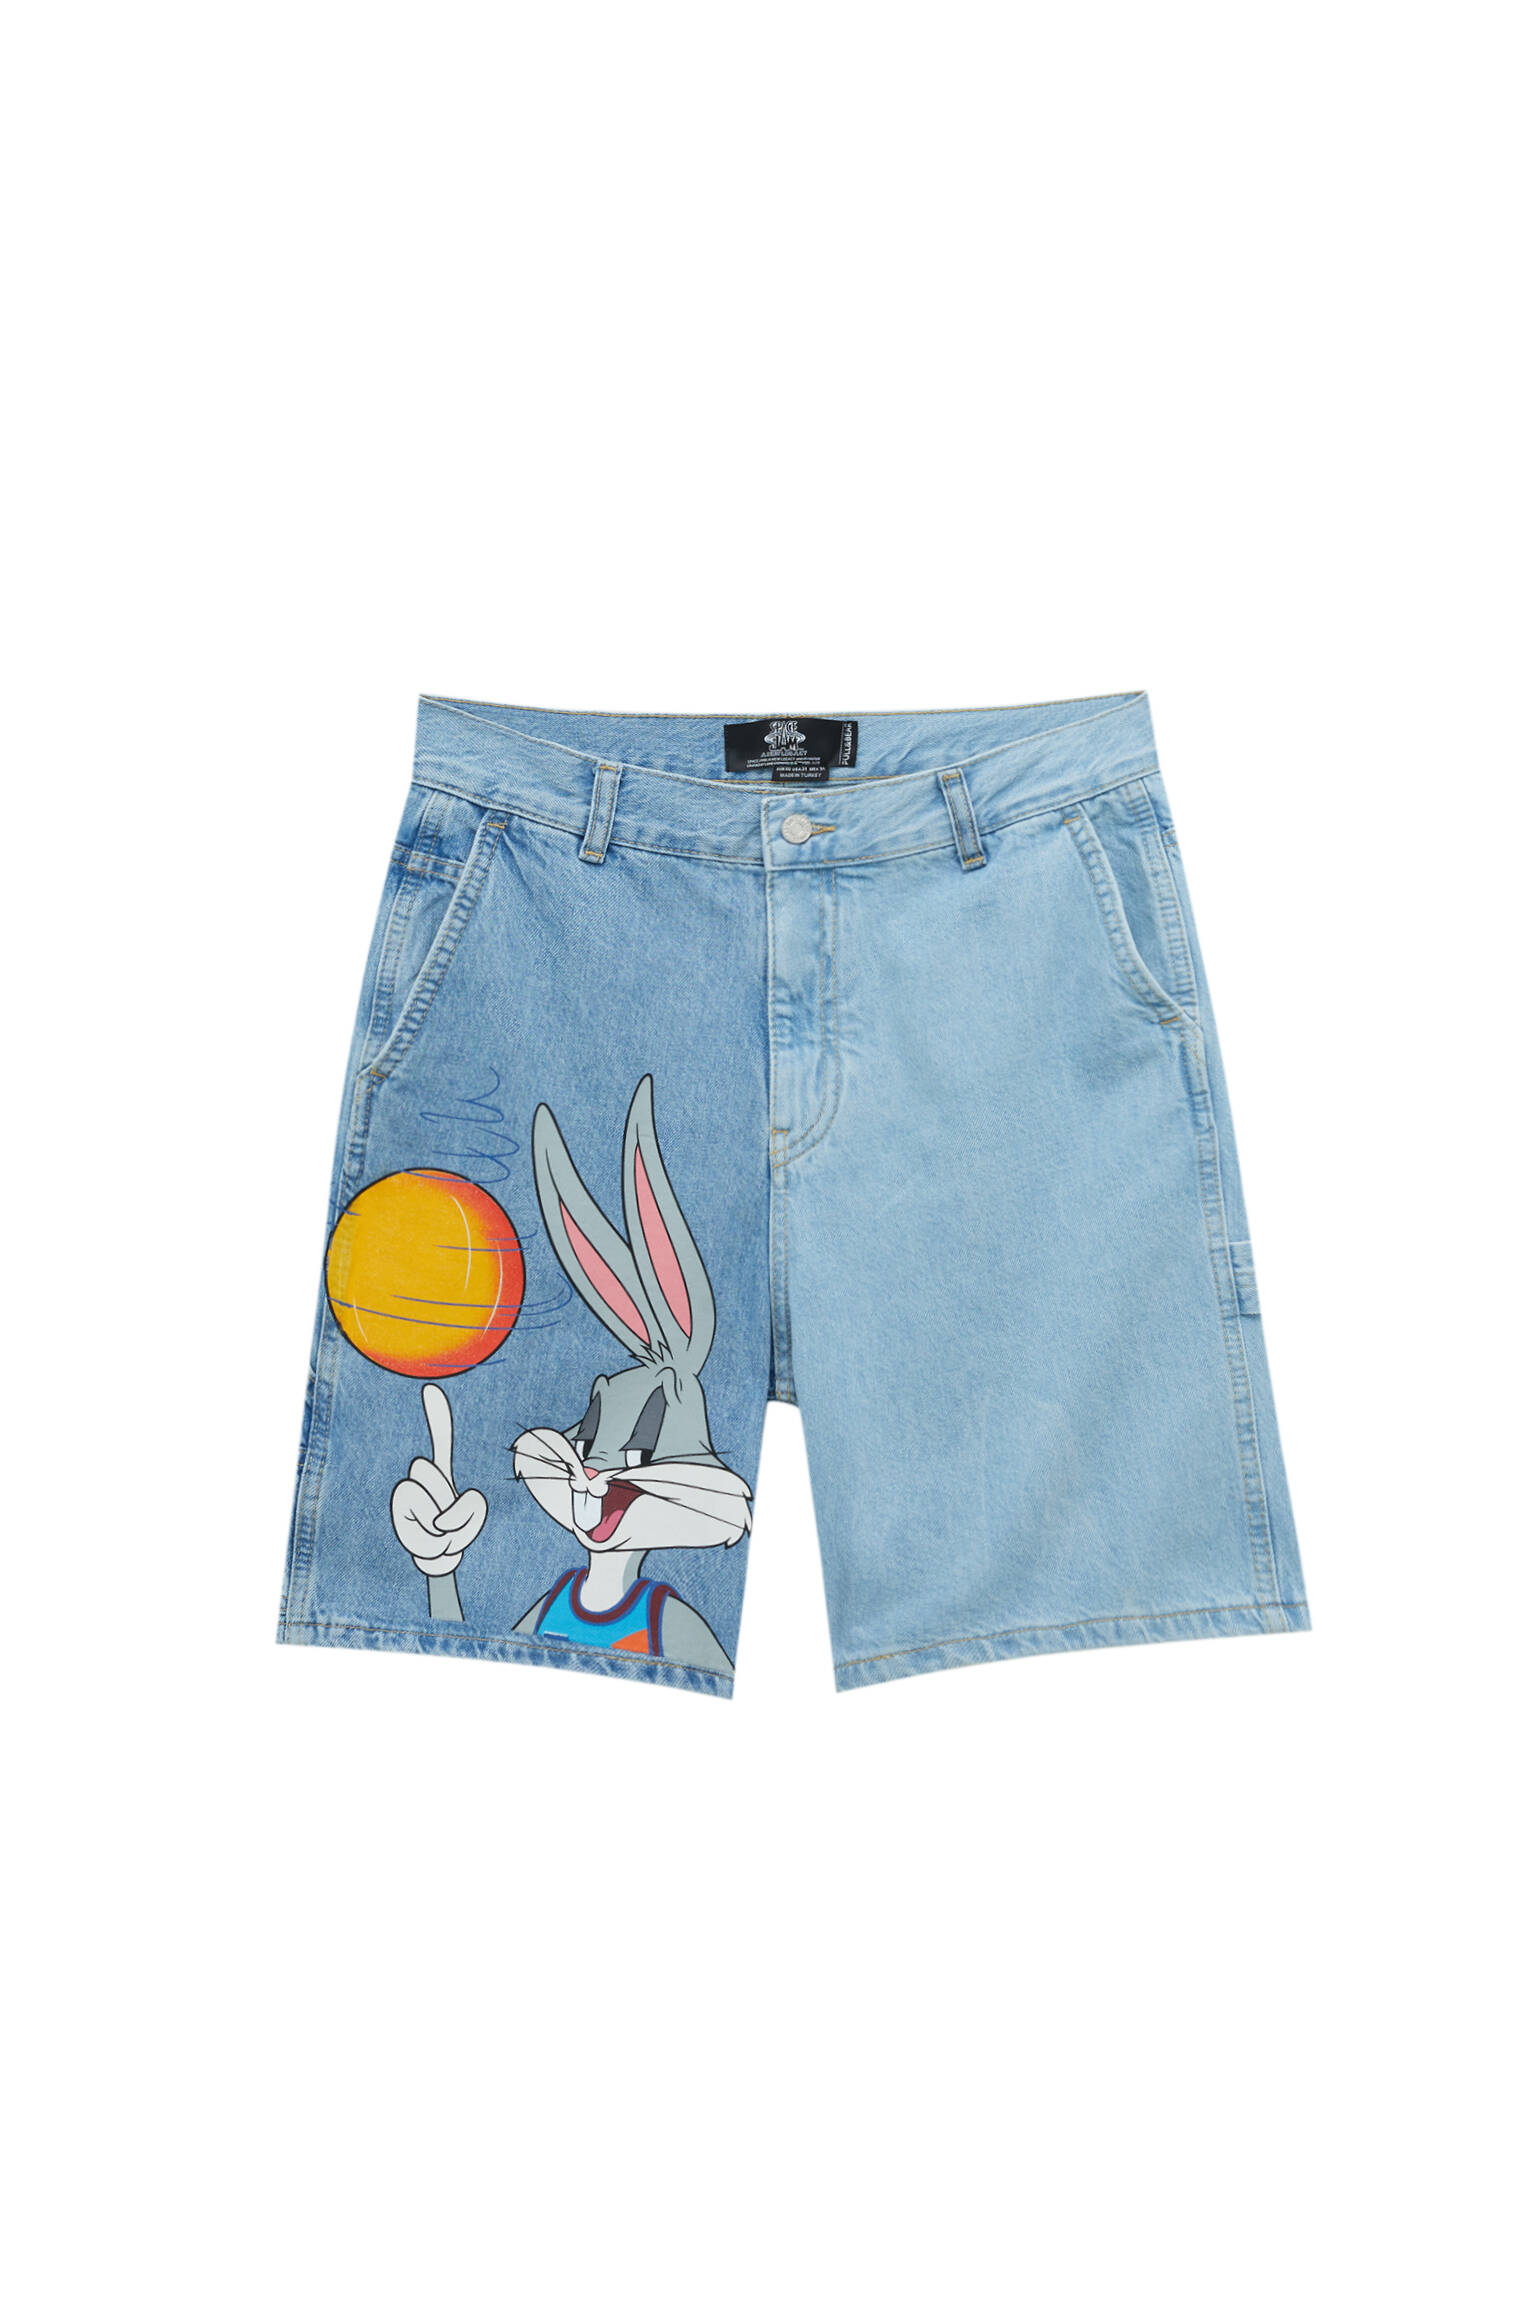 Джинсовые шорты с принтом Space Jam: Bugs Bunny СИНИЙ Pull & Bear